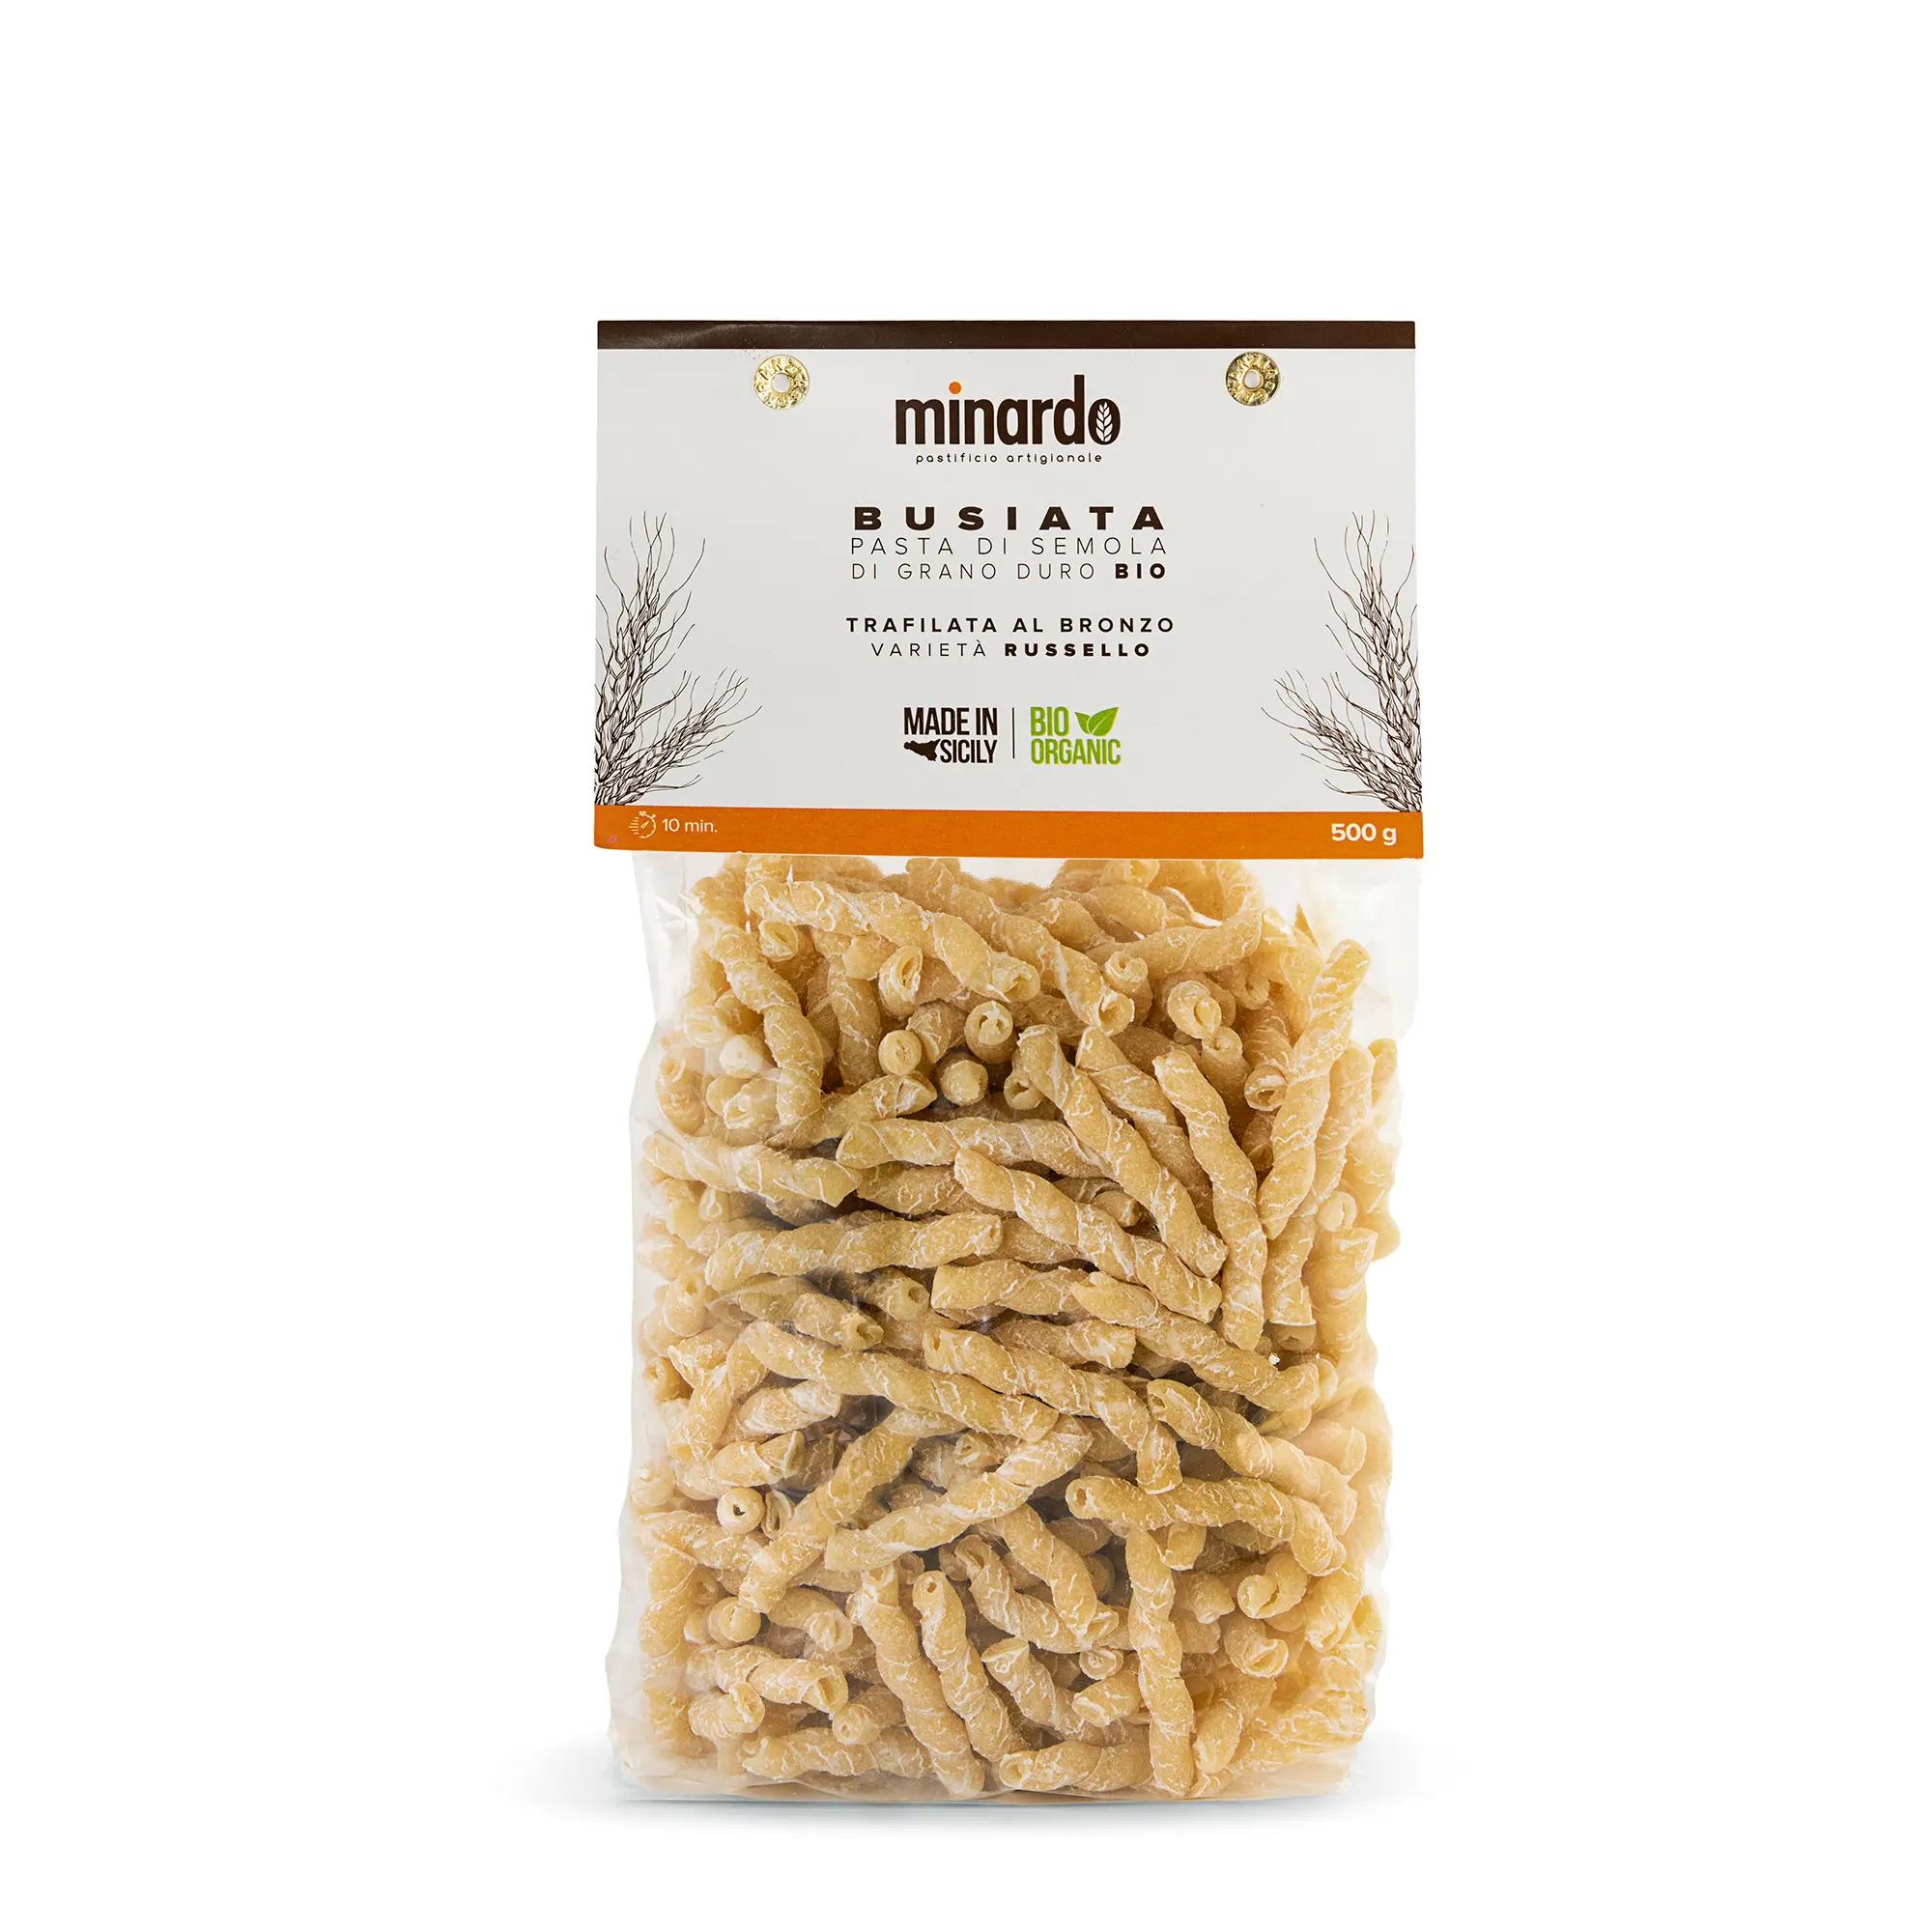 Busiata pasta biologica di grano duro-pasta di qualità premium made in Italy per cena